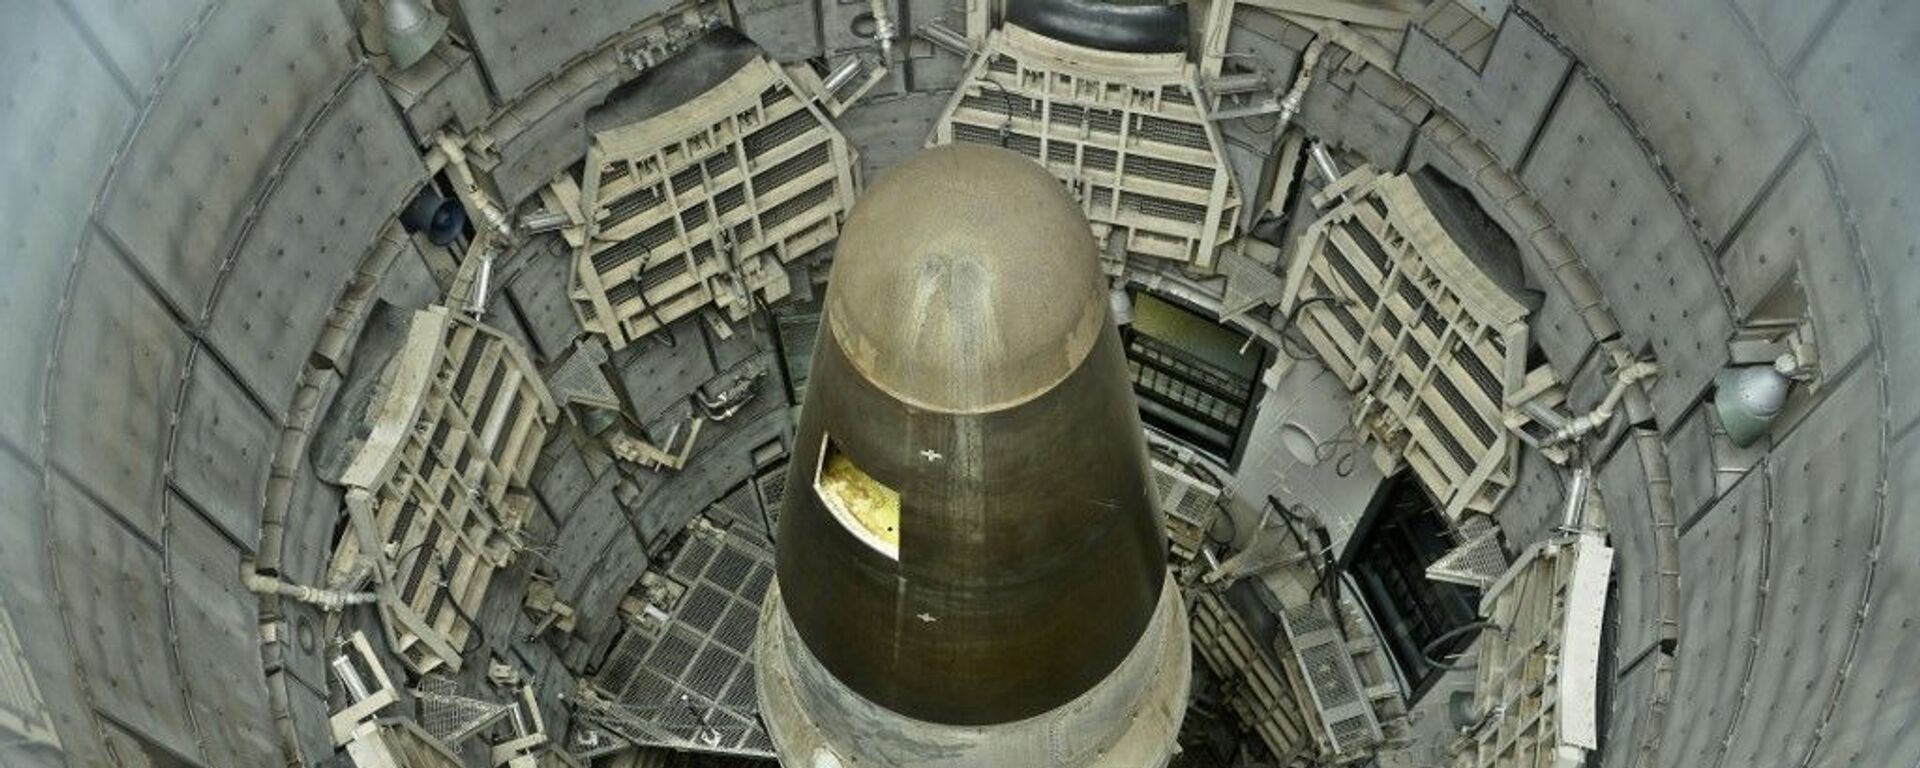 Míssil balístico intercontinental (ICBM, na sigla em inglês) nuclear Titan II desativado em silo no estado do Arizona, nos EUA (foto de arquivo) - Sputnik Brasil, 1920, 20.01.2024